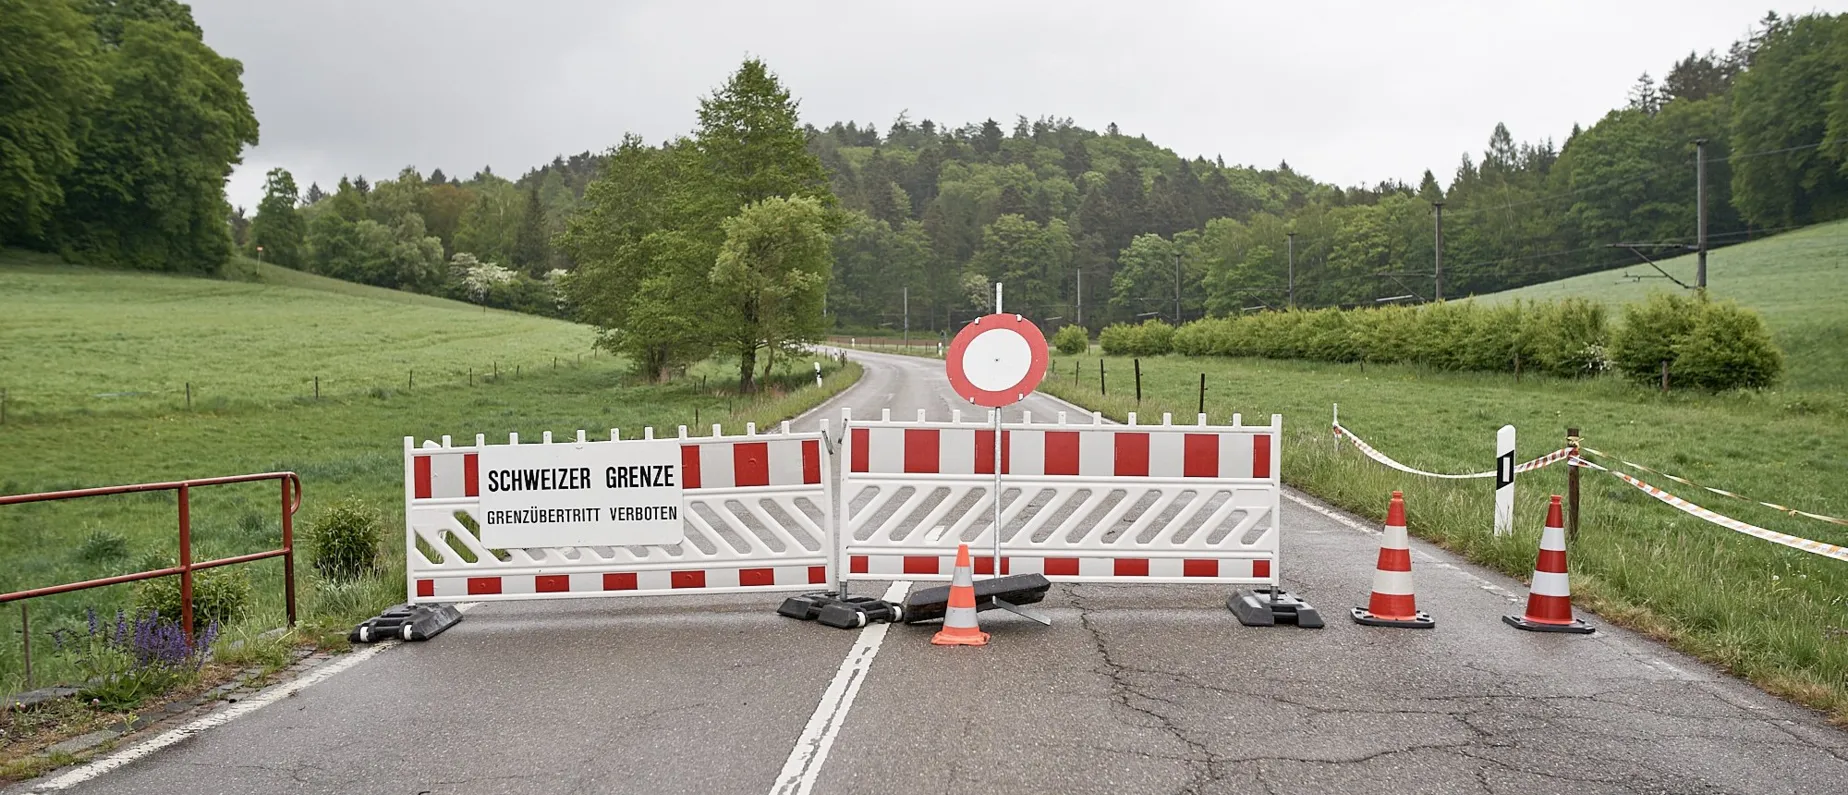 Auf beiden Seiten wenig los - Bild aufgenommen in Rafz an der Grenze zu Deutschland.